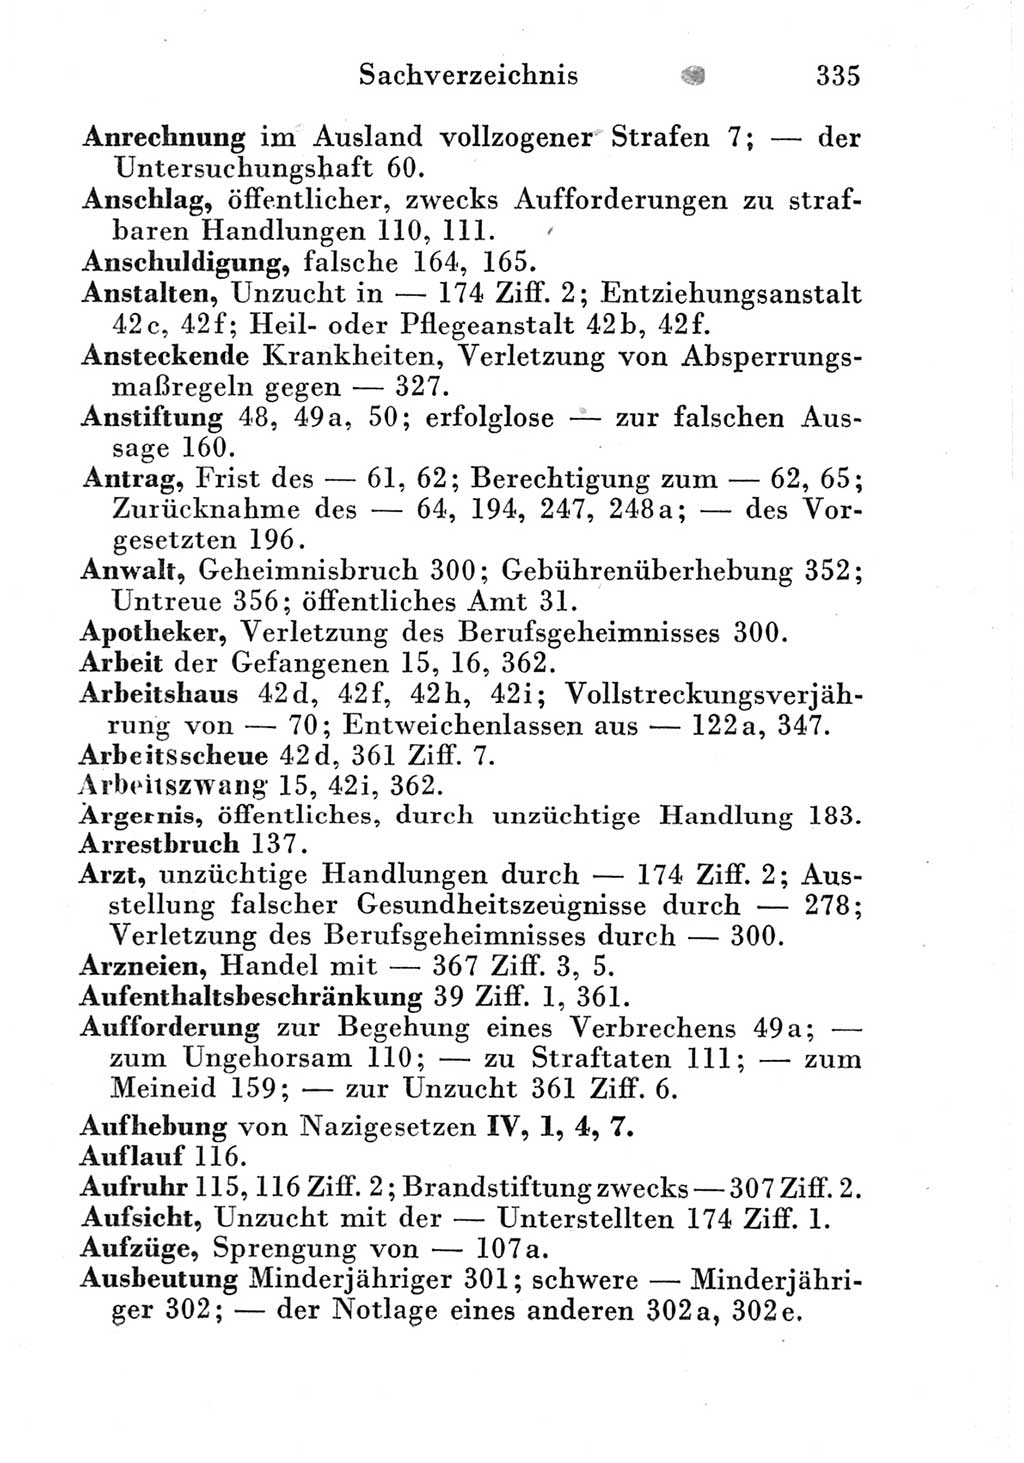 Strafgesetzbuch (StGB) und andere Strafgesetze [Deutsche Demokratische Republik (DDR)] 1951, Seite 335 (StGB Strafges. DDR 1951, S. 335)